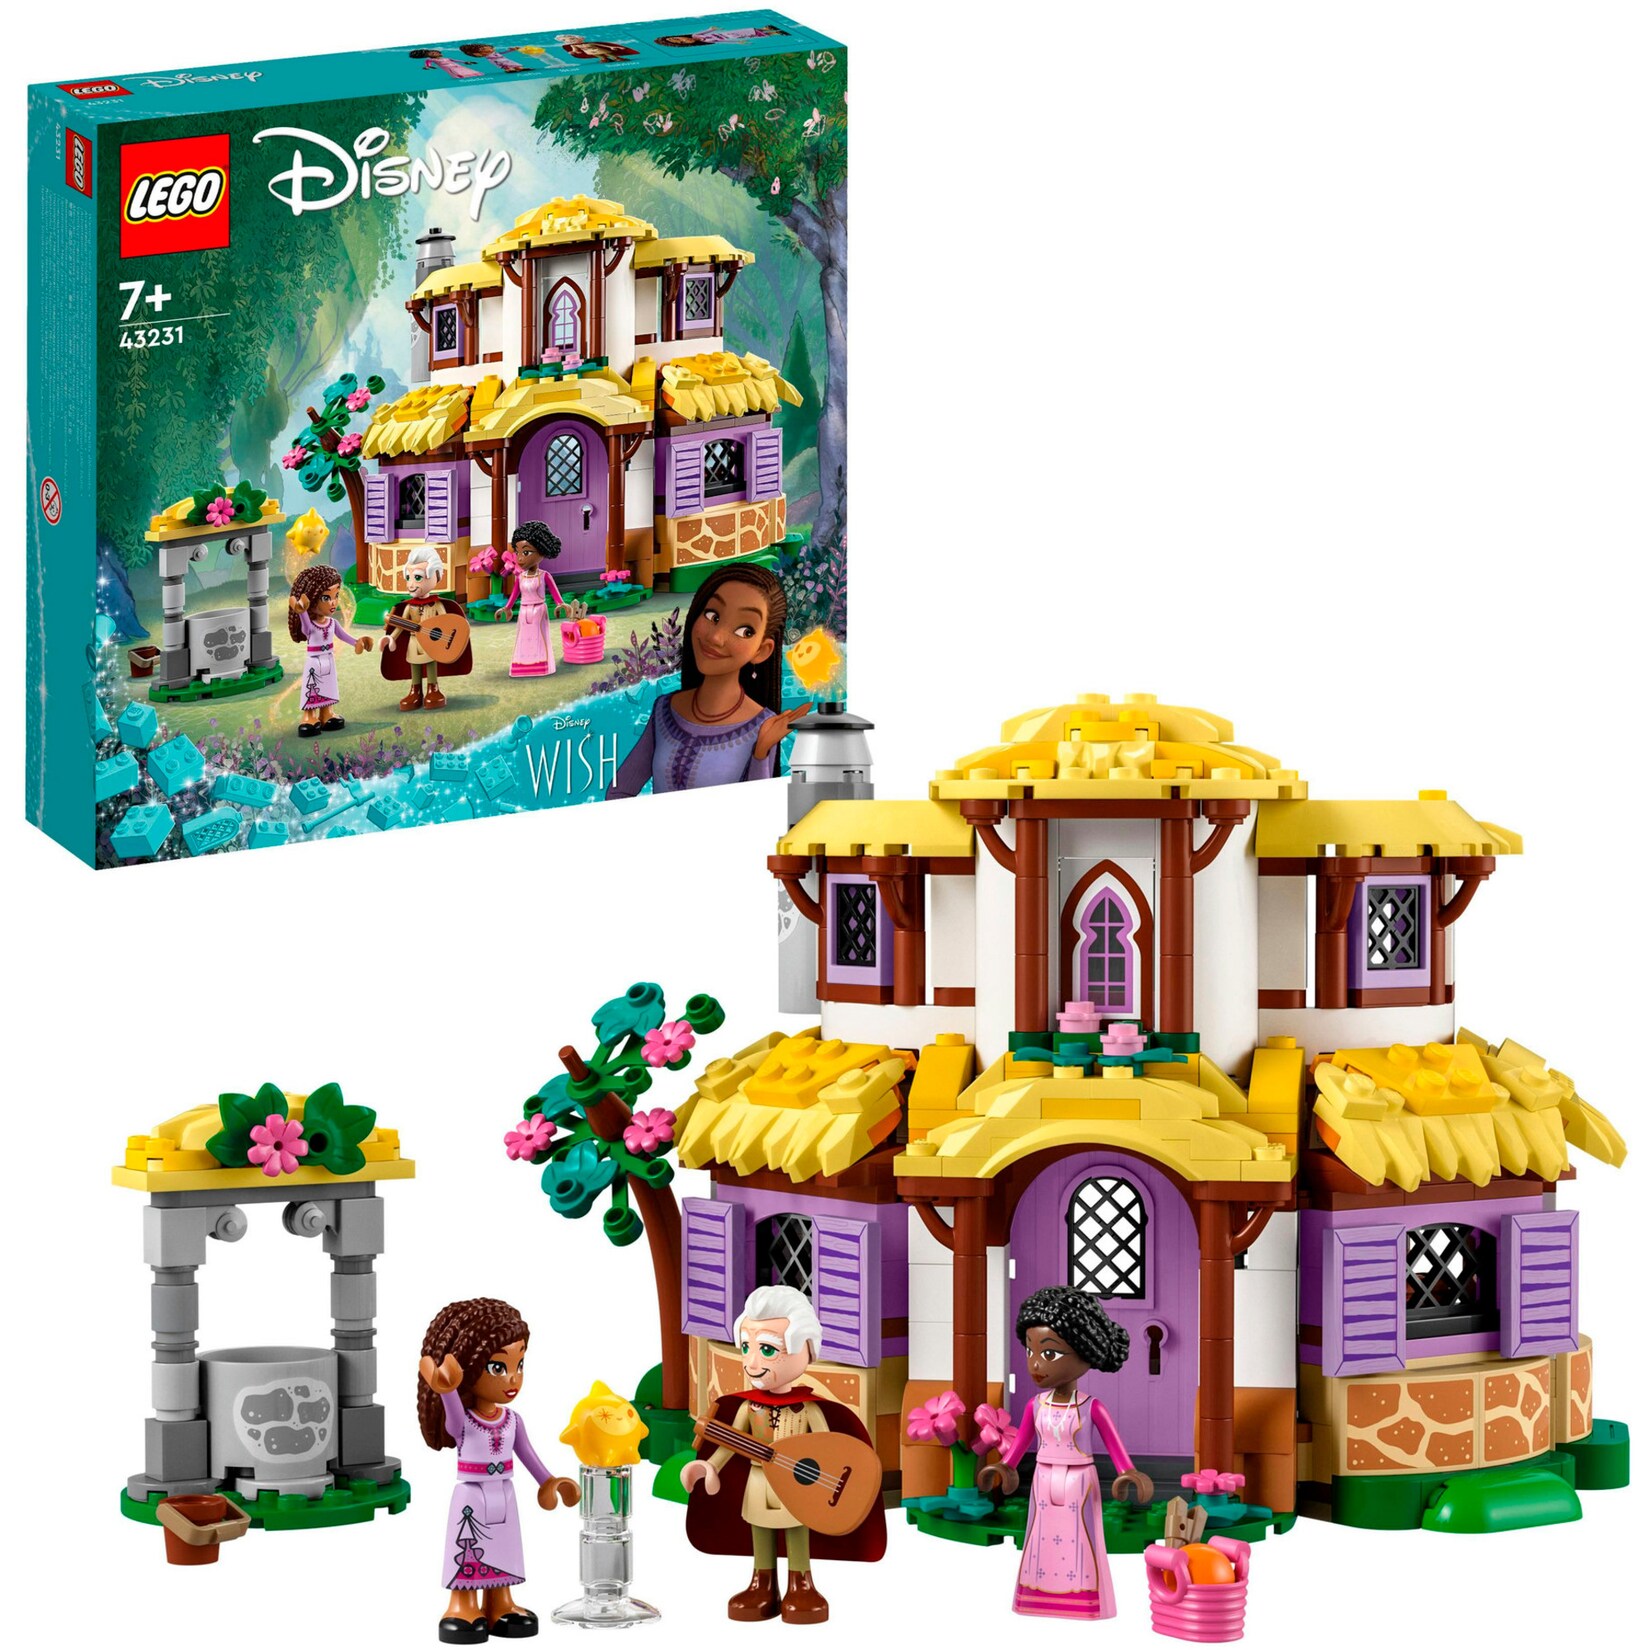 LEGO Konstruktionsspielzeug Disney Wish Ashas Häuschen